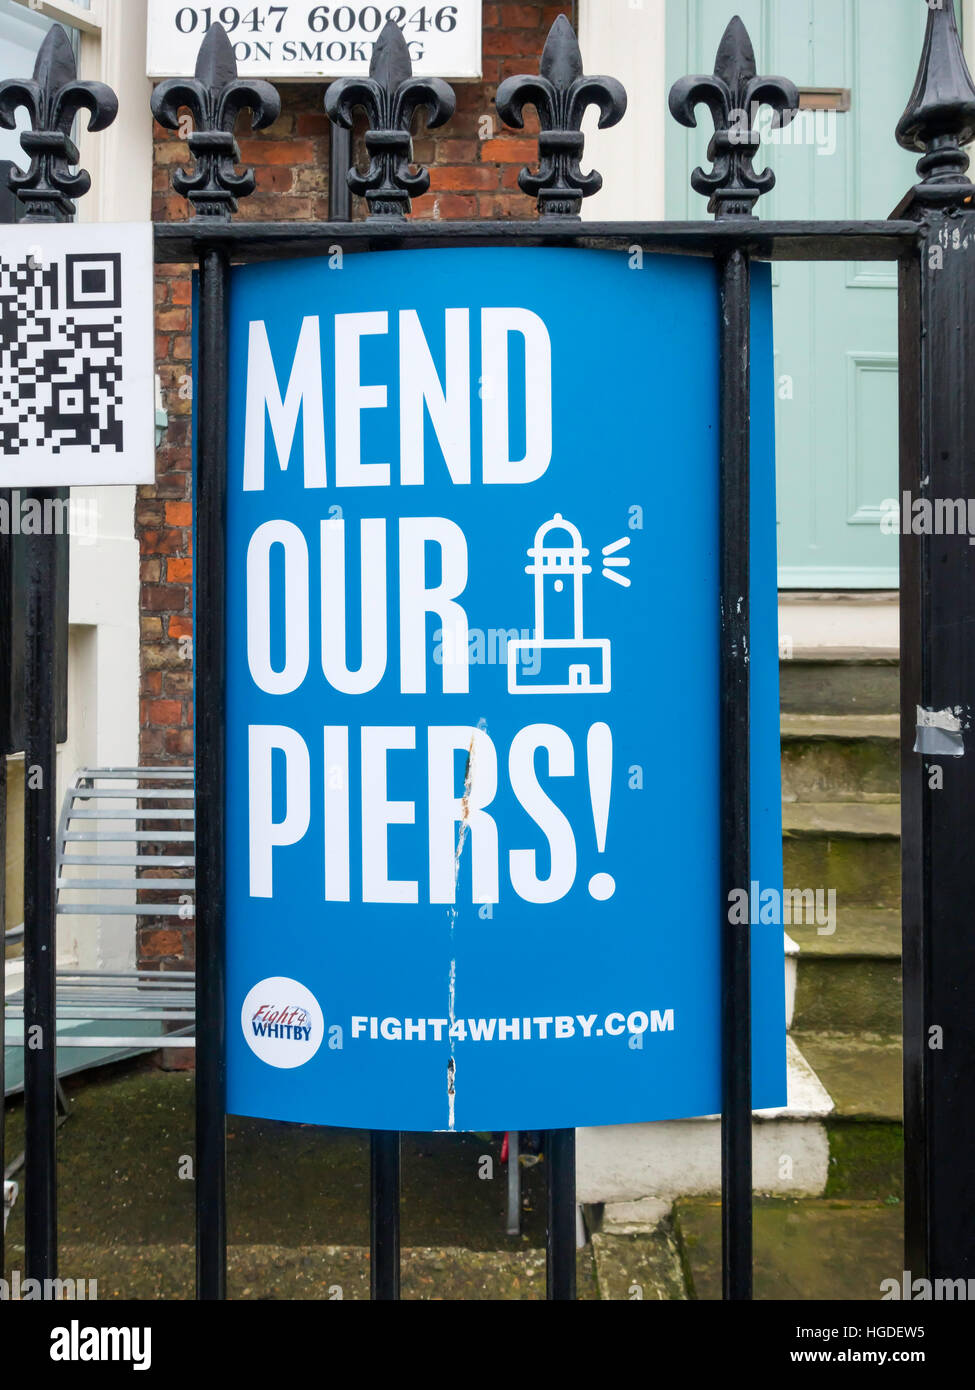 Unsere Piers Kampagne Ankündigung zu reparieren, indem eine Druck-Gruppe versucht, erforderliche Reparaturen um Whitby Hafen Piers zu gelangen Stockfoto